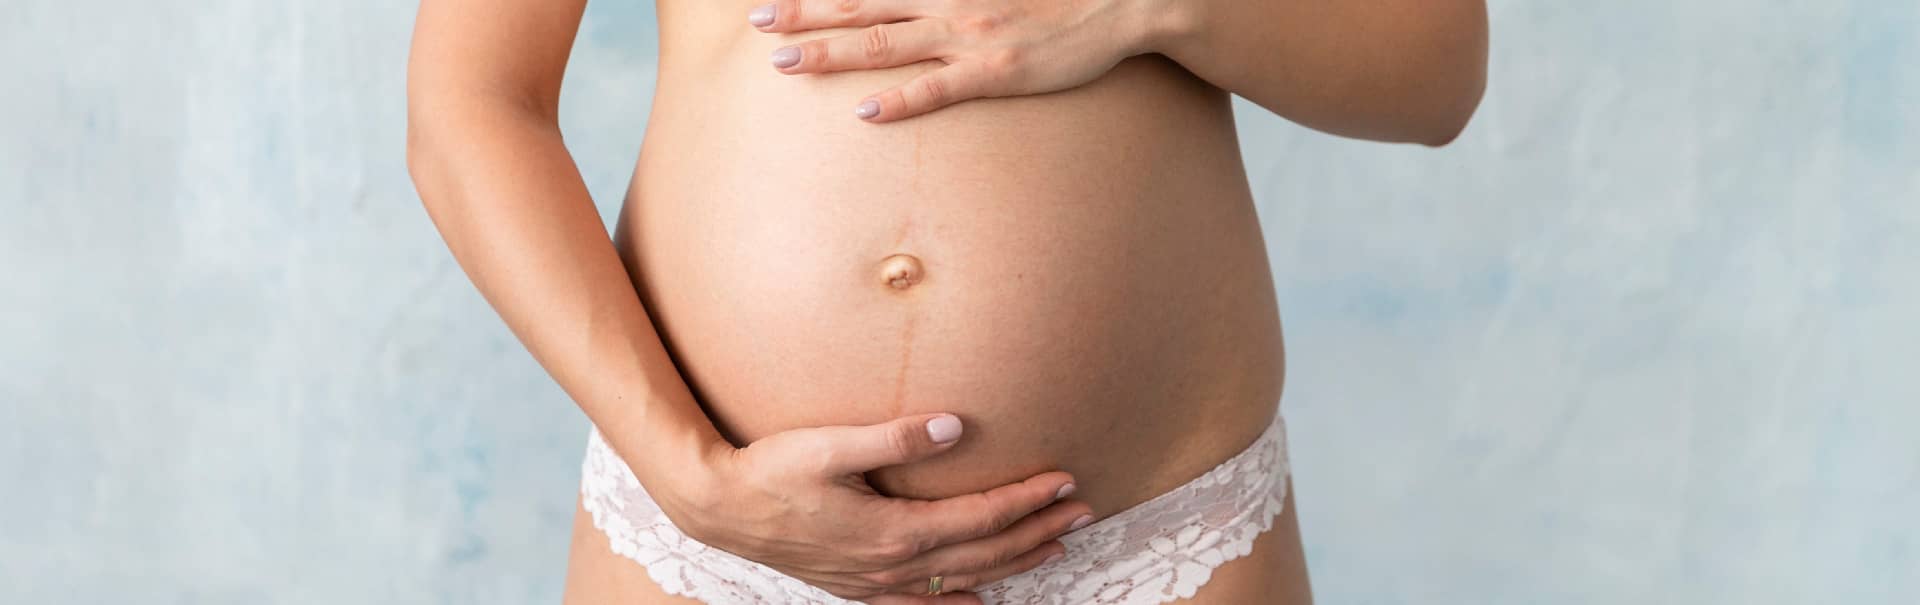 Condiciones comunes de la piel durante el embarazo